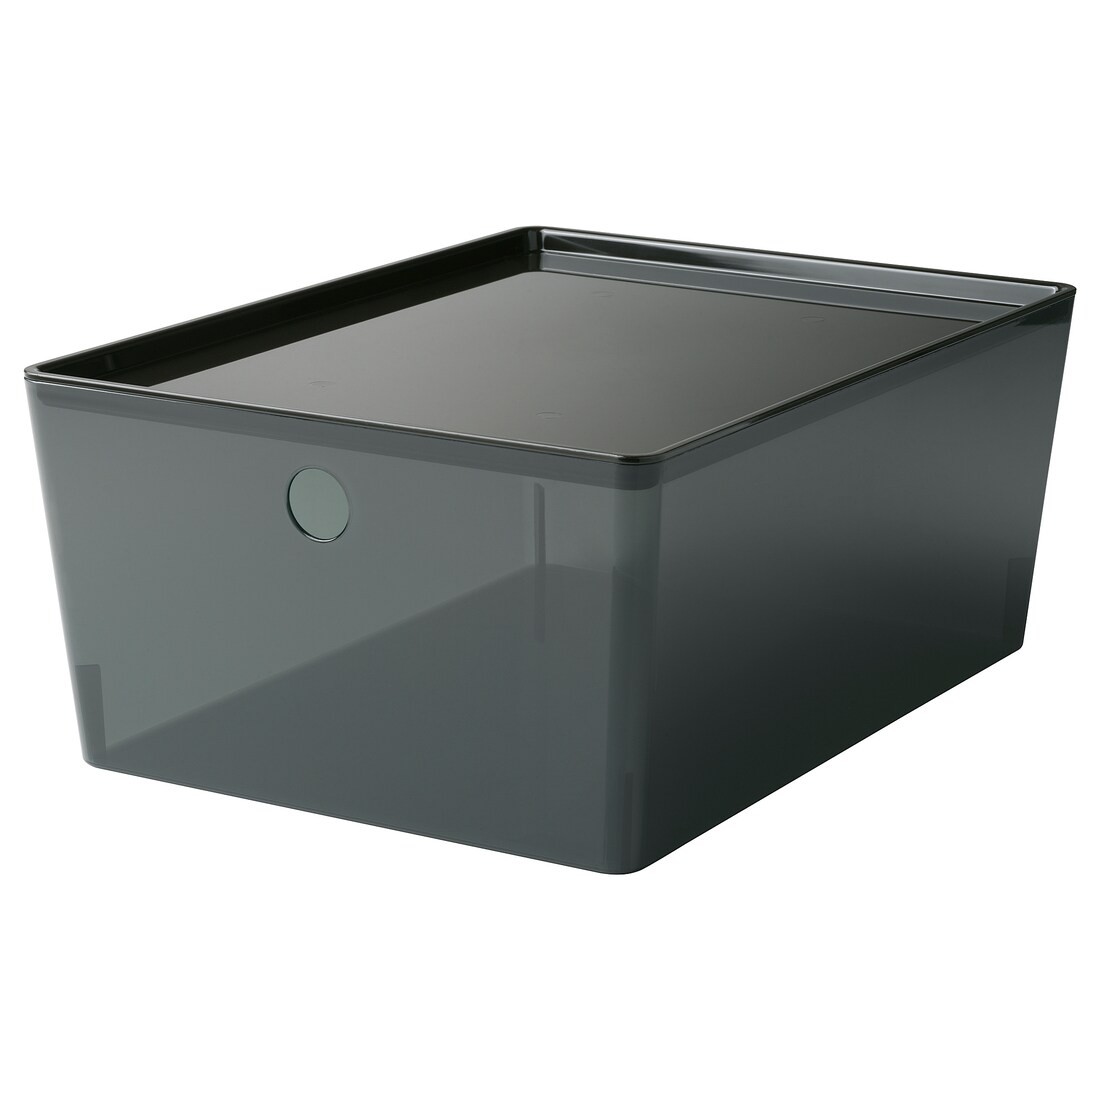 KUGGIS контейнер с крышкой, прозрачный черный, 26x35x15 см